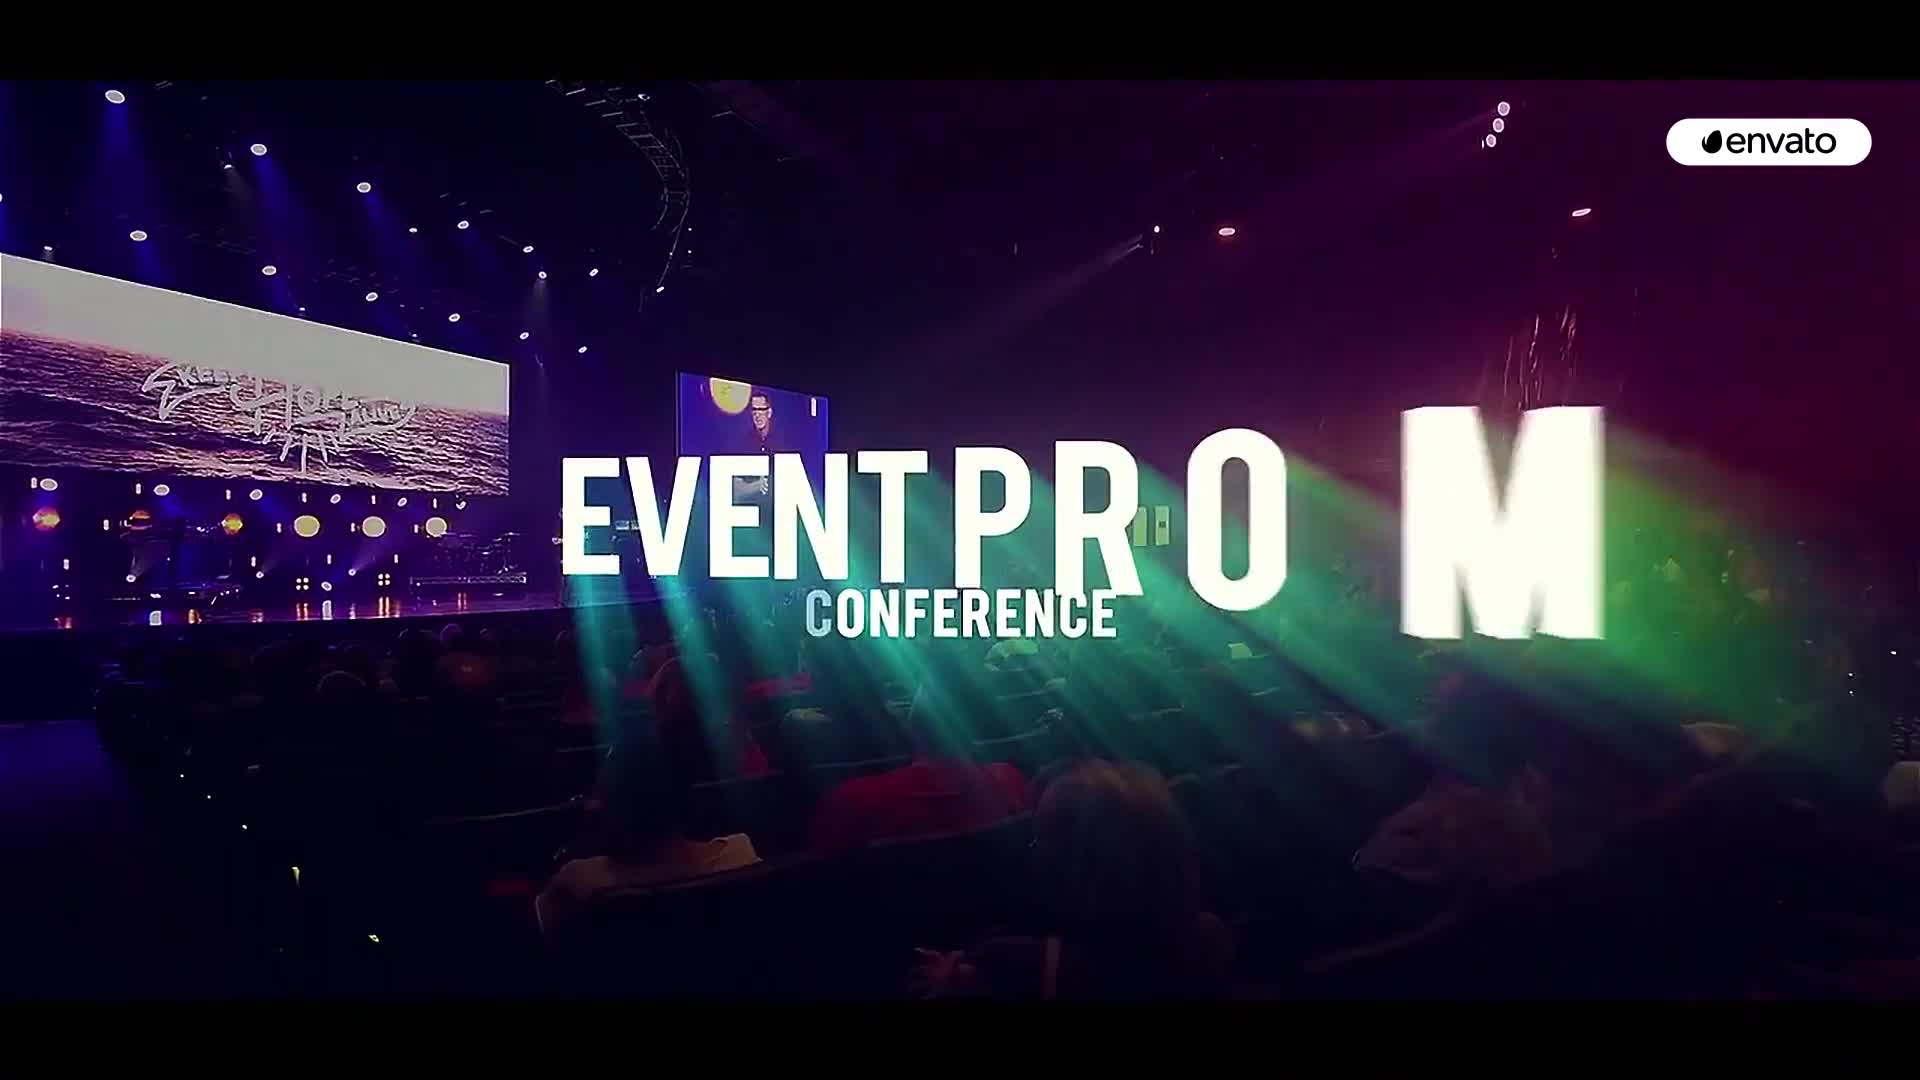 Event Promo for Premiere Pro Videohive 27798077 Premiere Pro Image 1